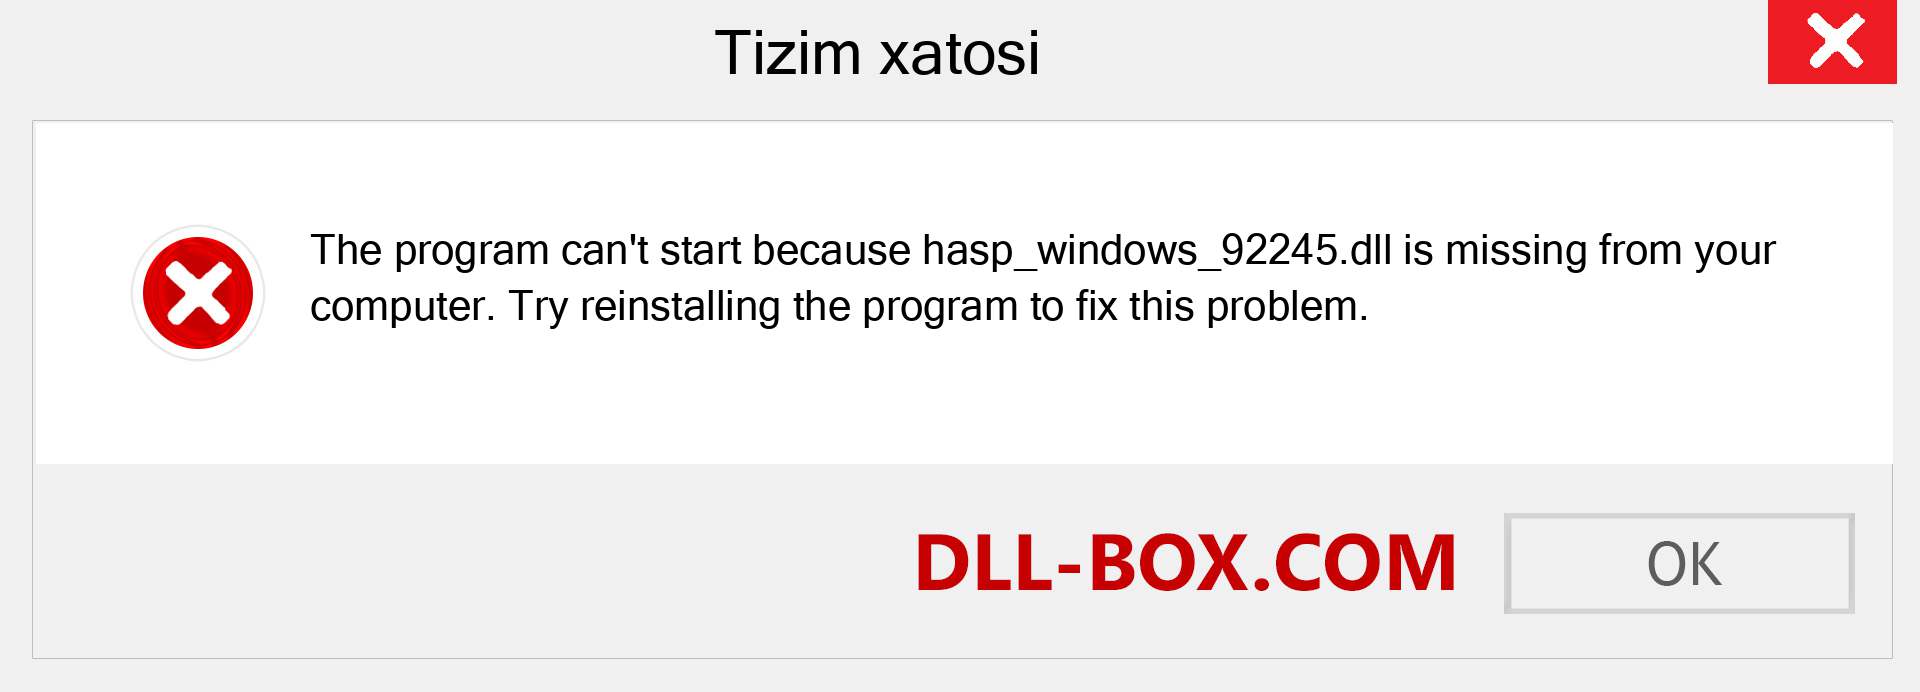 hasp_windows_92245.dll fayli yo'qolganmi?. Windows 7, 8, 10 uchun yuklab olish - Windowsda hasp_windows_92245 dll etishmayotgan xatoni tuzating, rasmlar, rasmlar